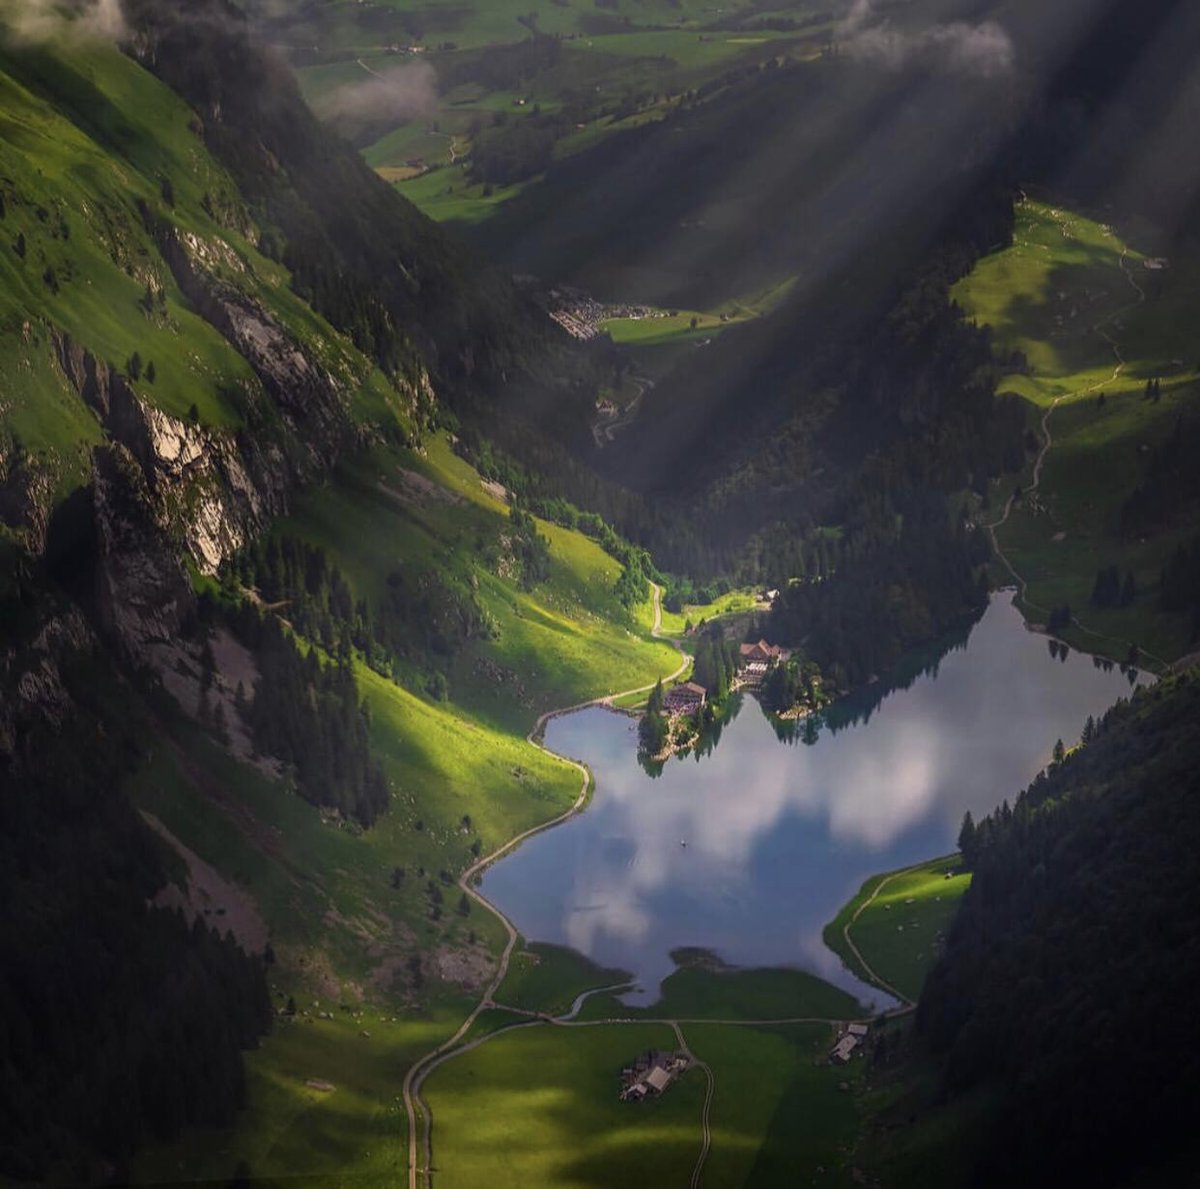 İlk fotoğraf bizim doğal güzelliğimiz, Uzungöl. 
İkinci fotoğraf İsviçre’nin doğal güzelliği Seealpsee gölü...